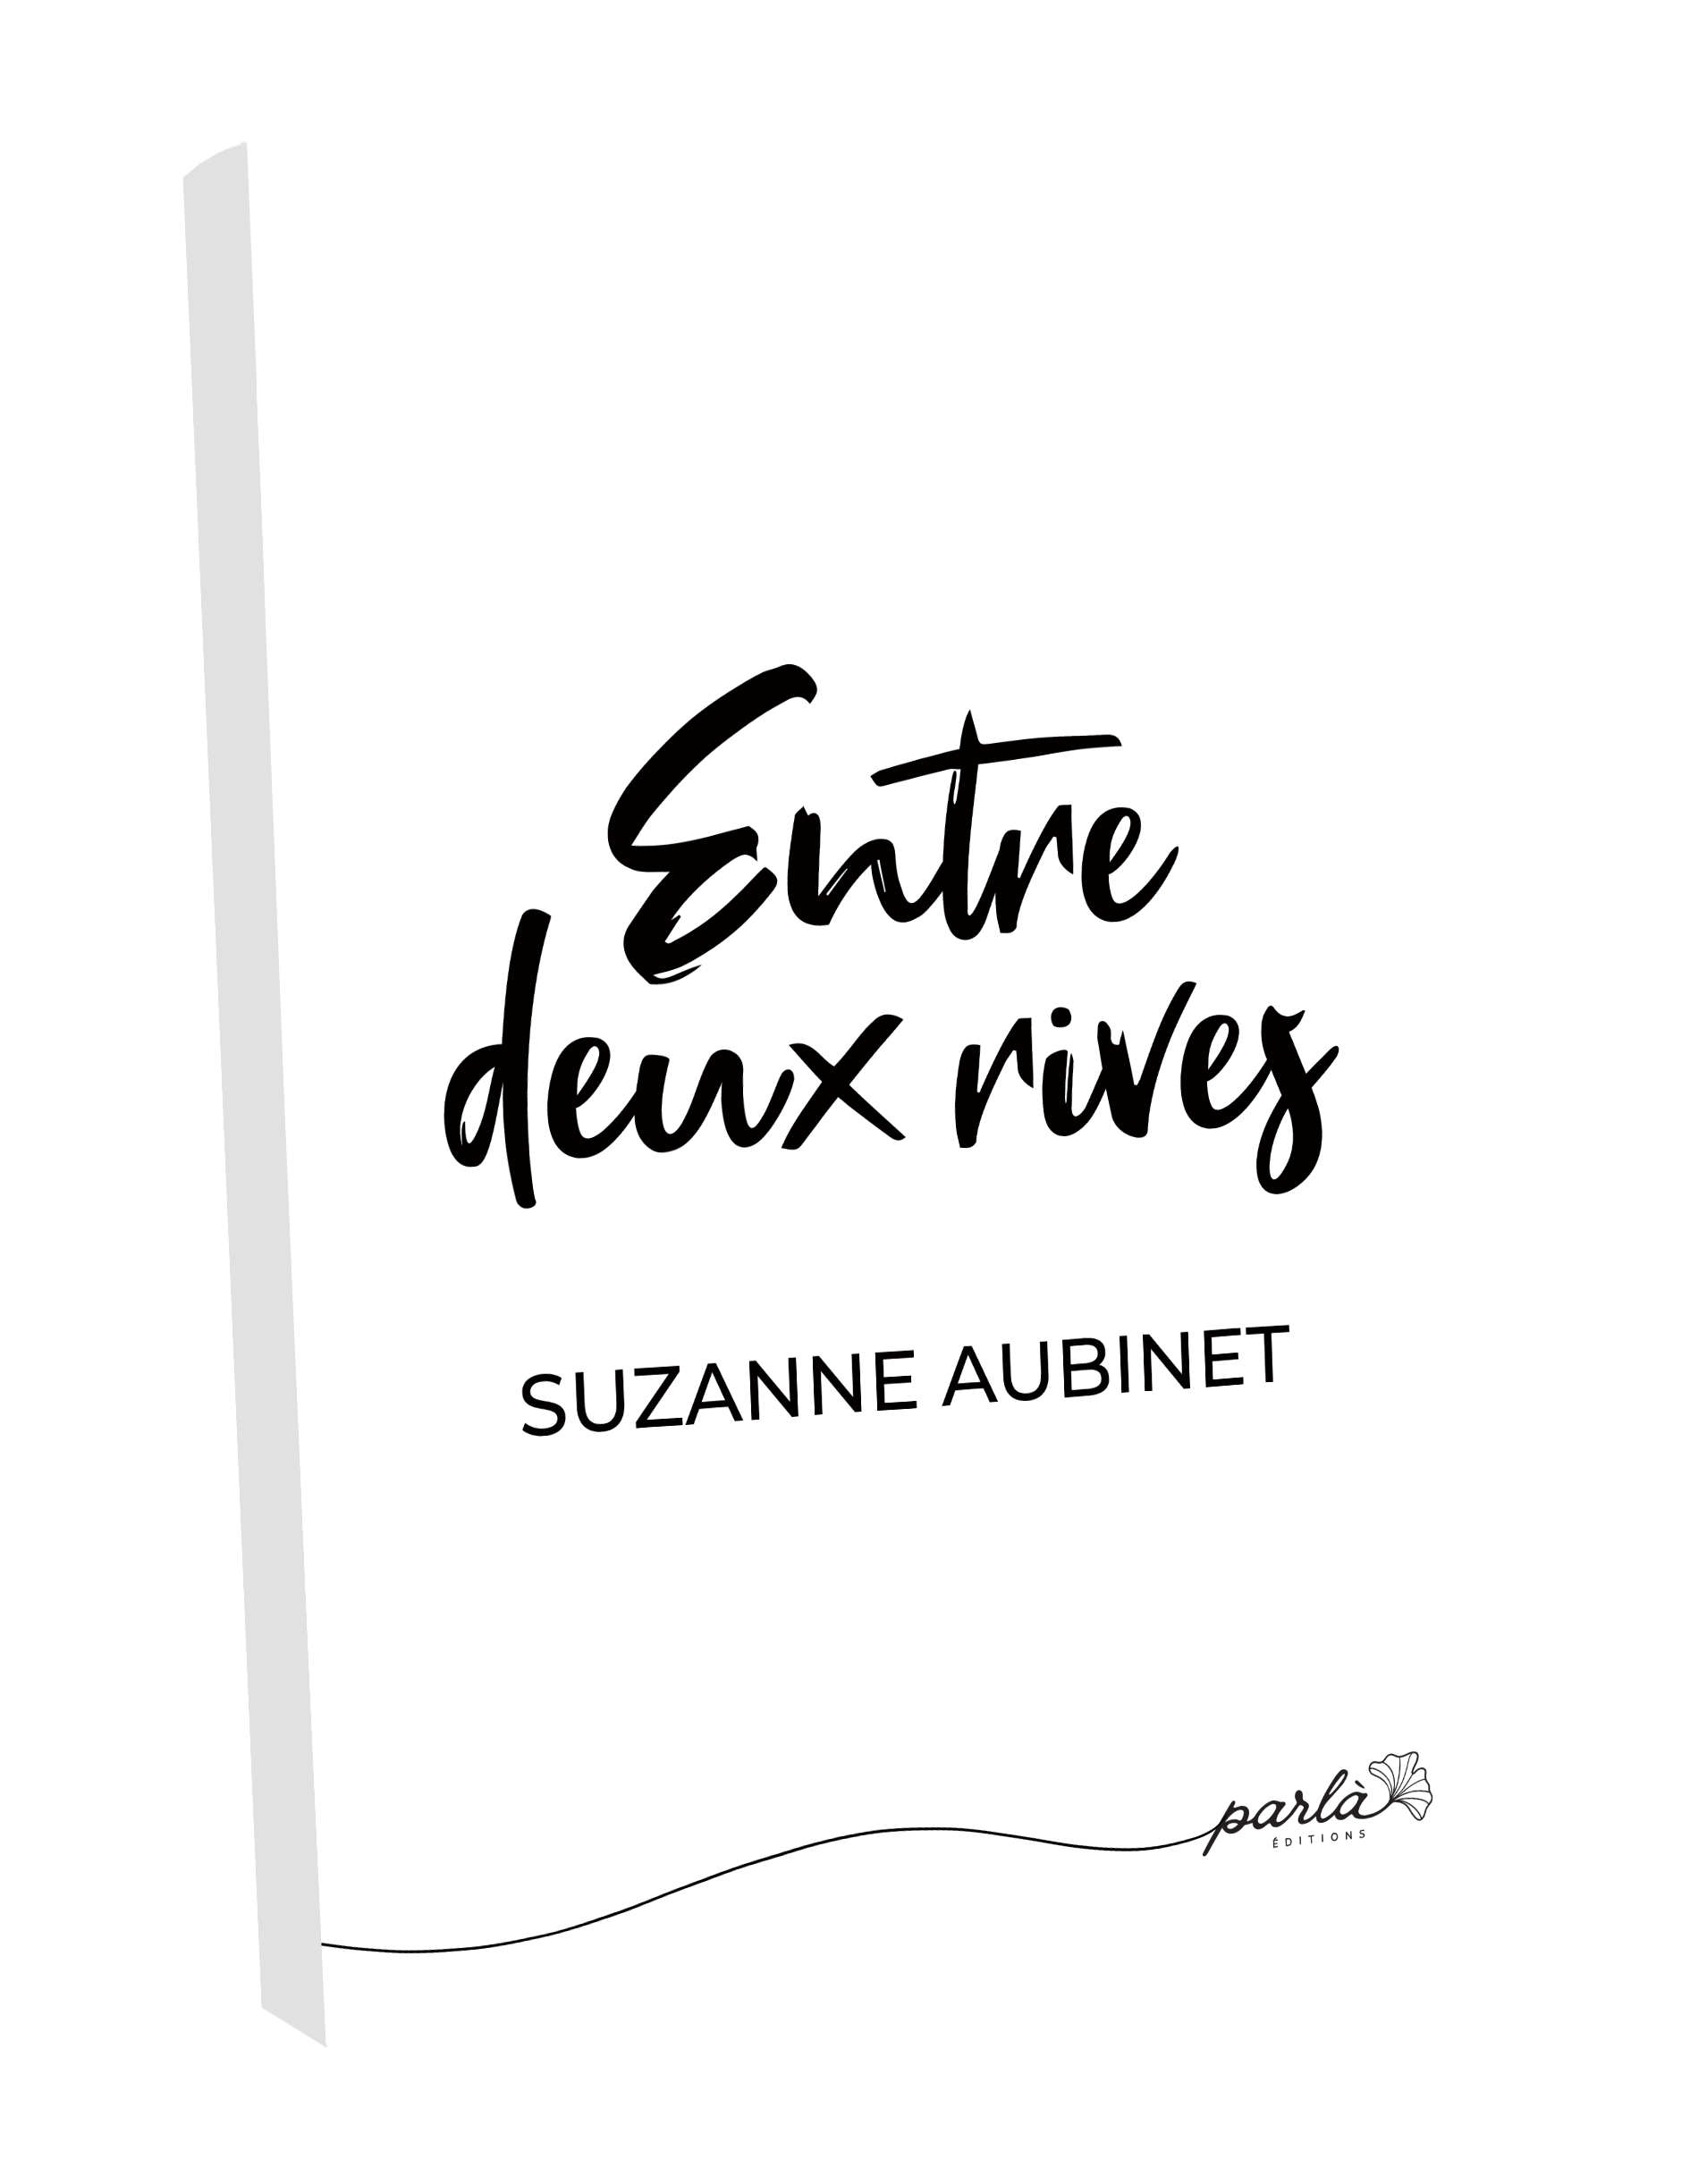 Entre deux rives - Suzanne Aubinet